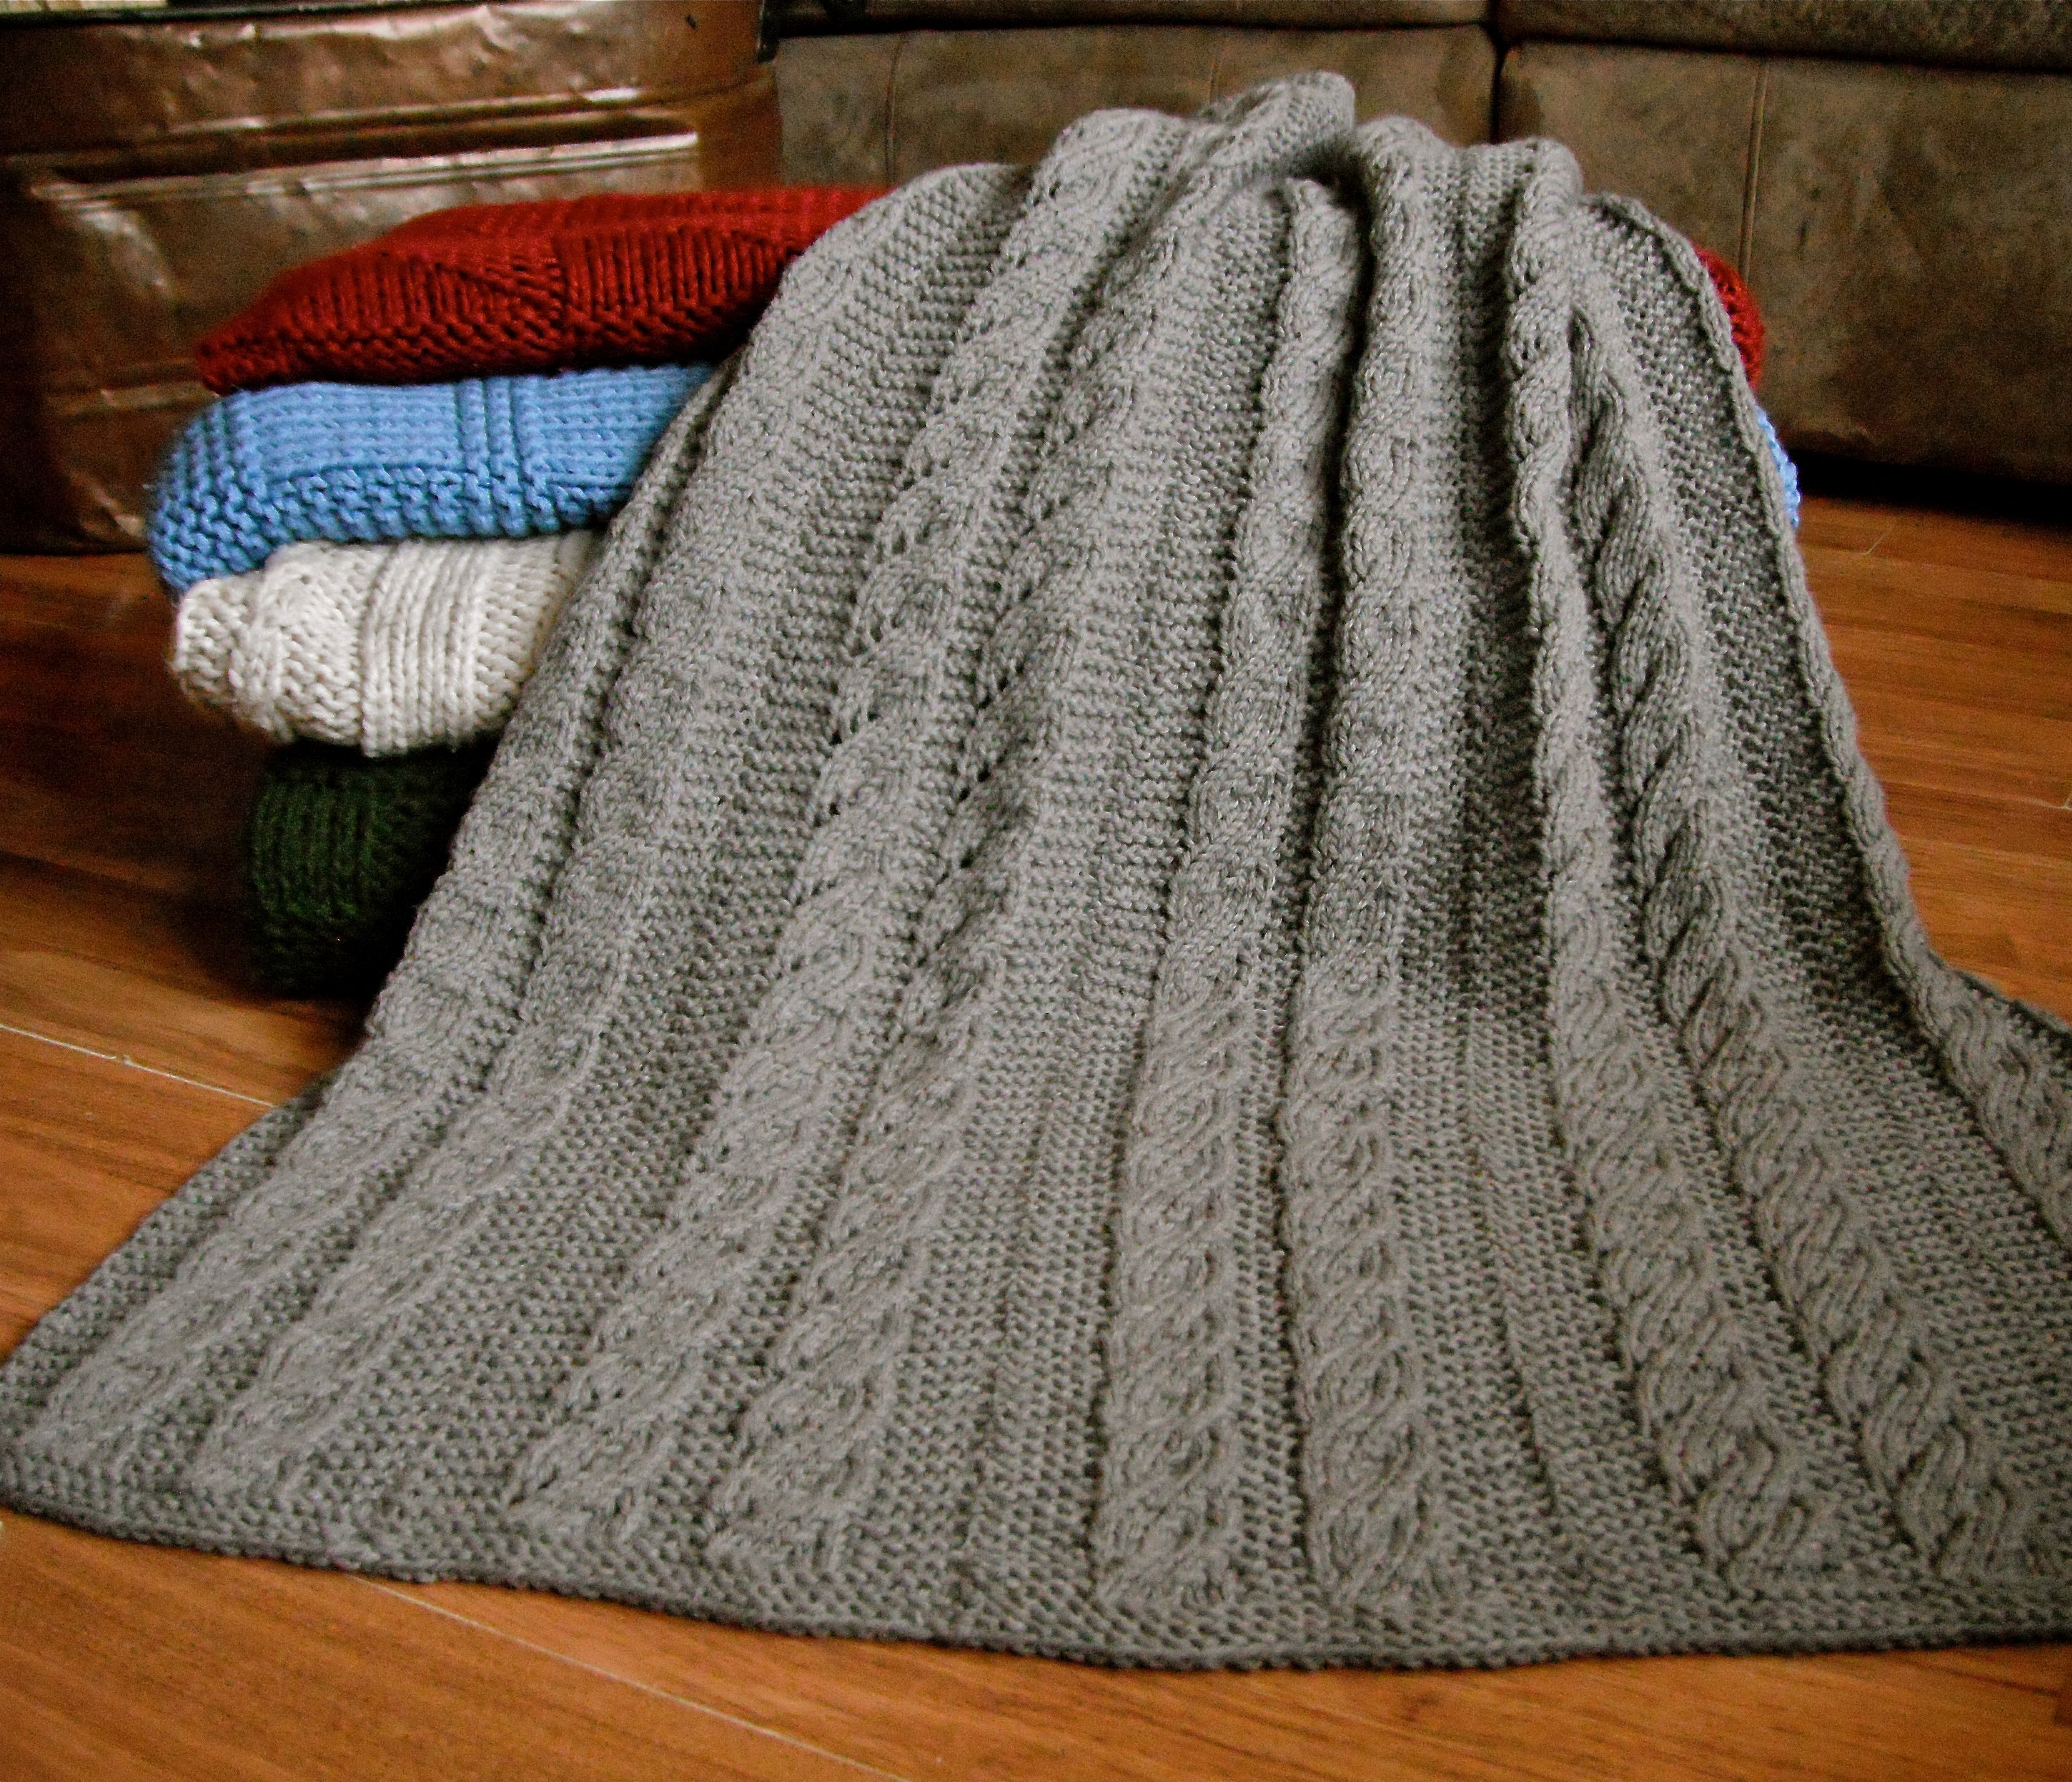 Crochet Patterns Baby Blankets Spiral Columns Ba Blanket Pattern Knitting Patterns And Crochet